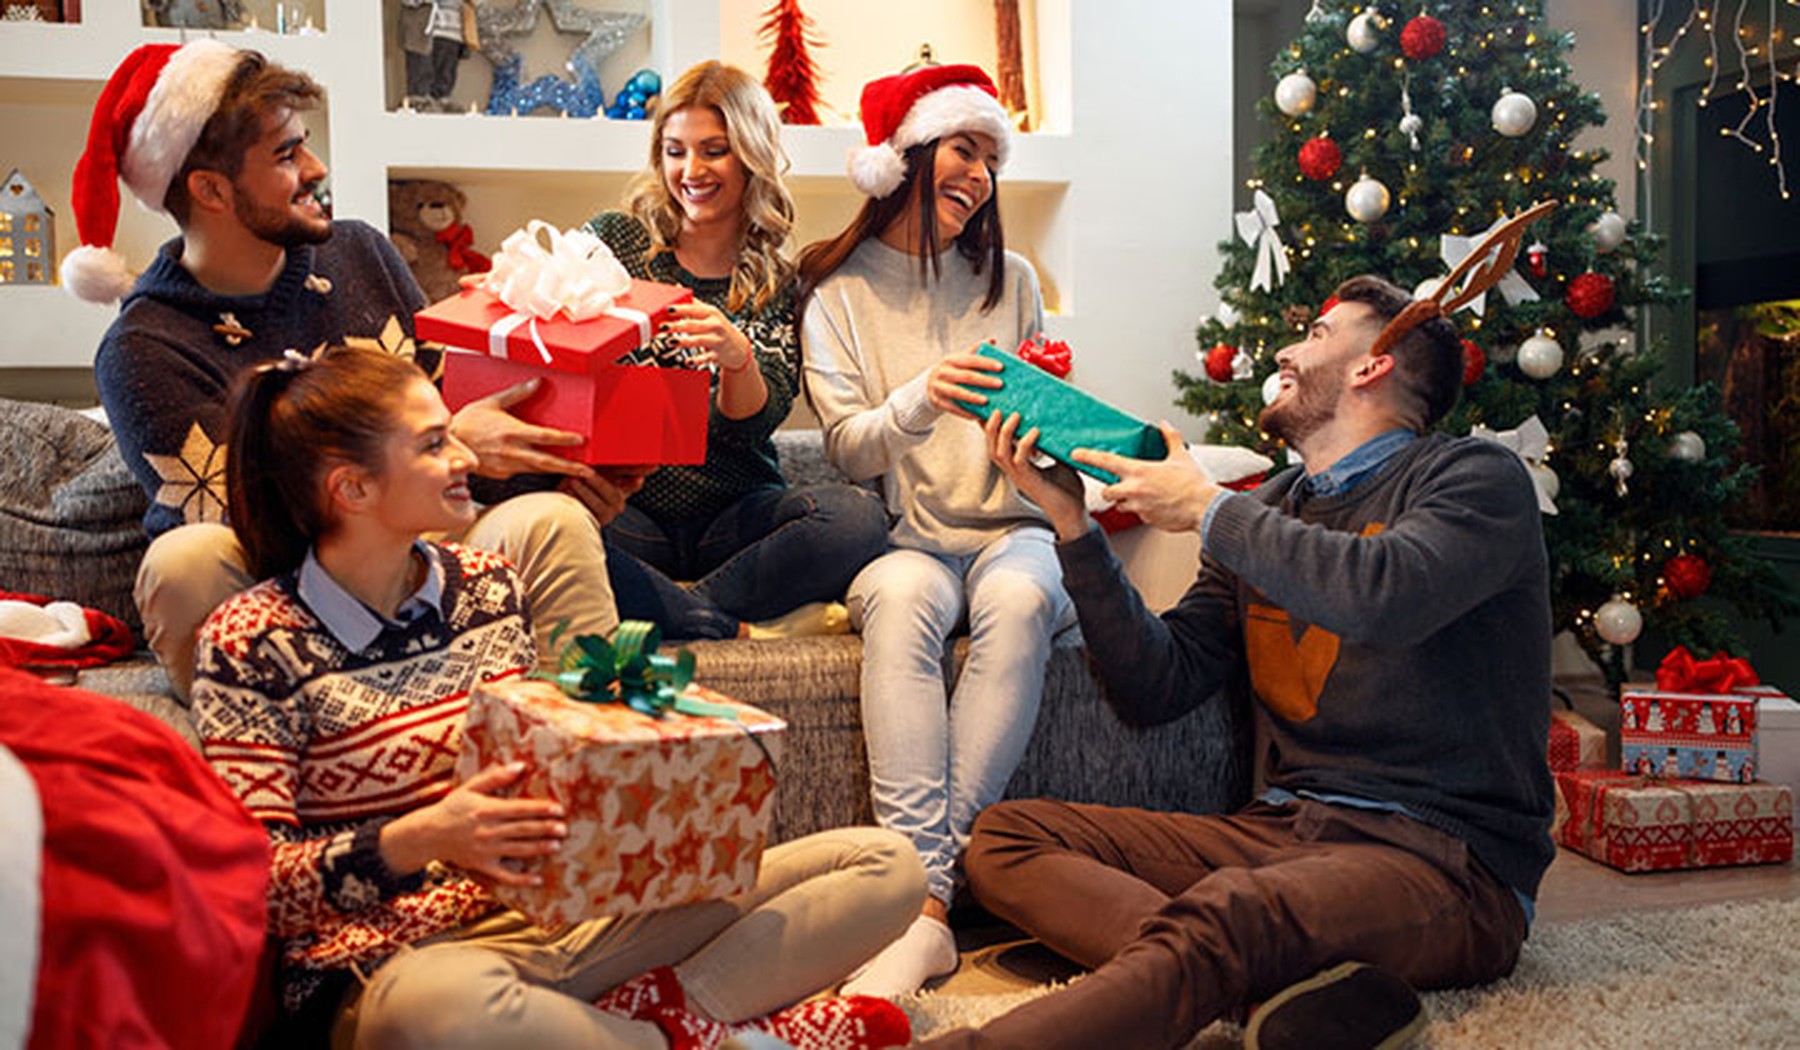 Jóvenes con regalos y decoración navideña